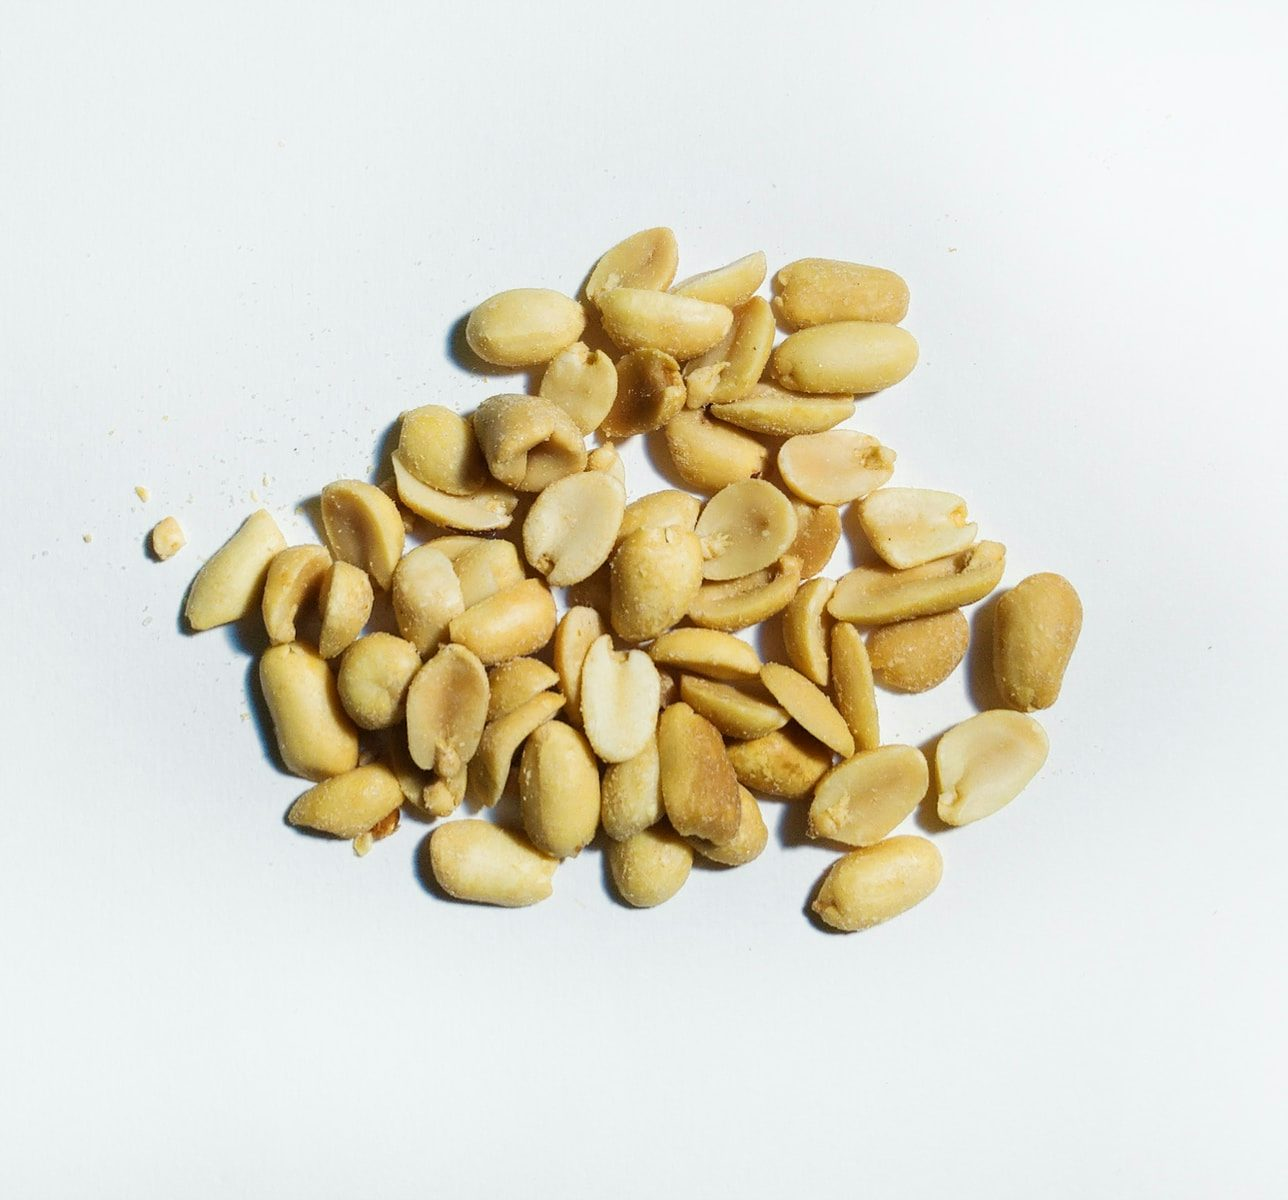 Peanut Processing Equipment